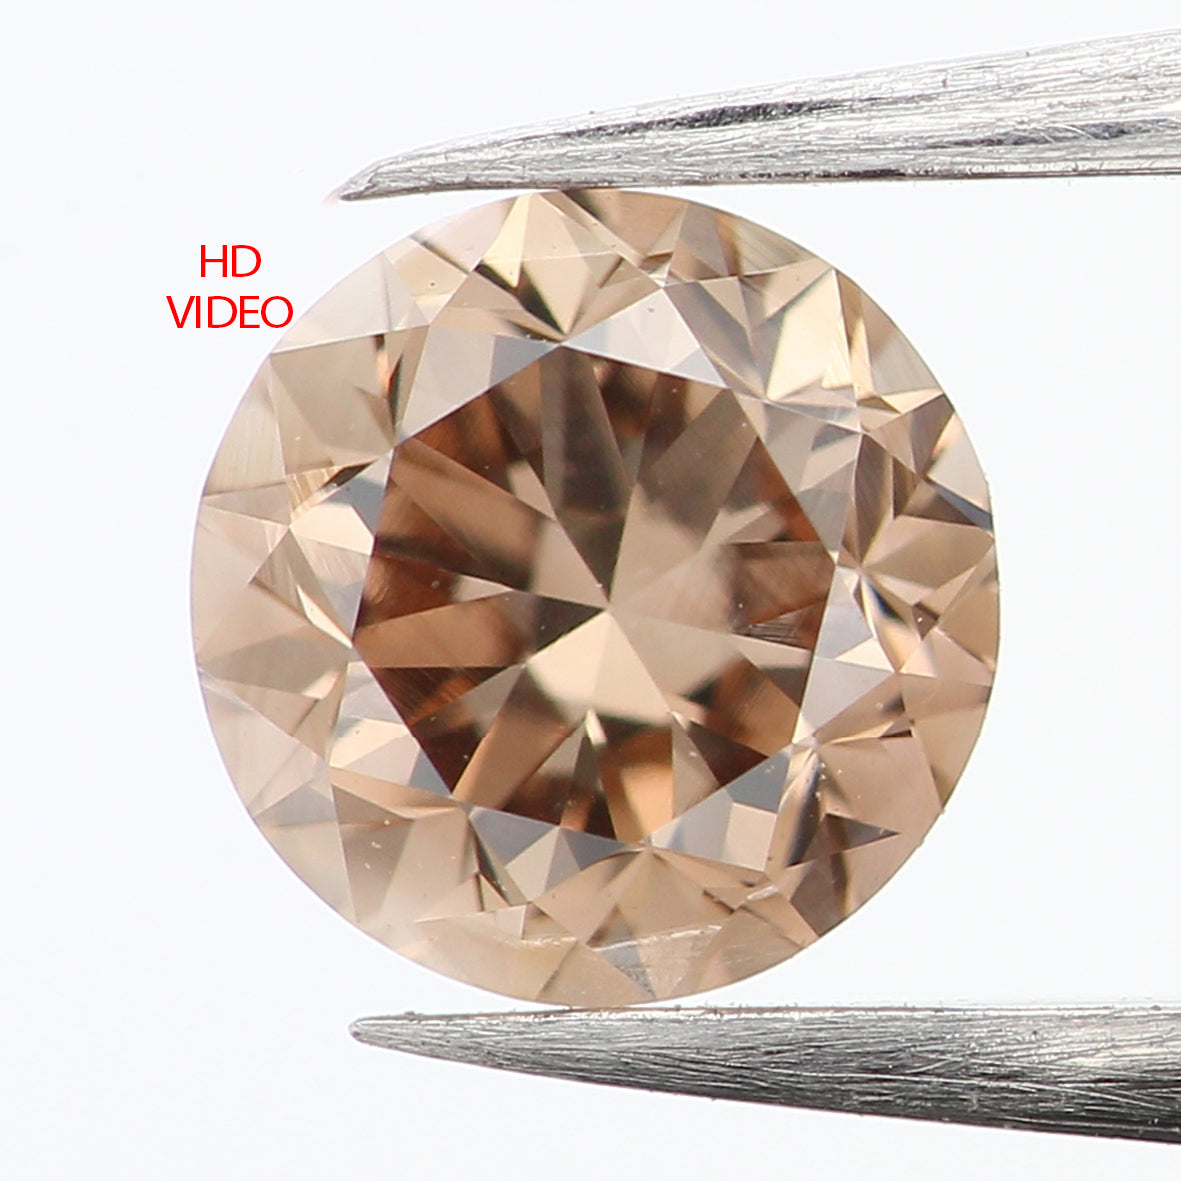 0.41 Ct Natural Loose Diamond, Brown Diamond, Round Diamond, Round Brilliant Cut Diamond, Sparkling Diamond, Rustic Diamond, L837